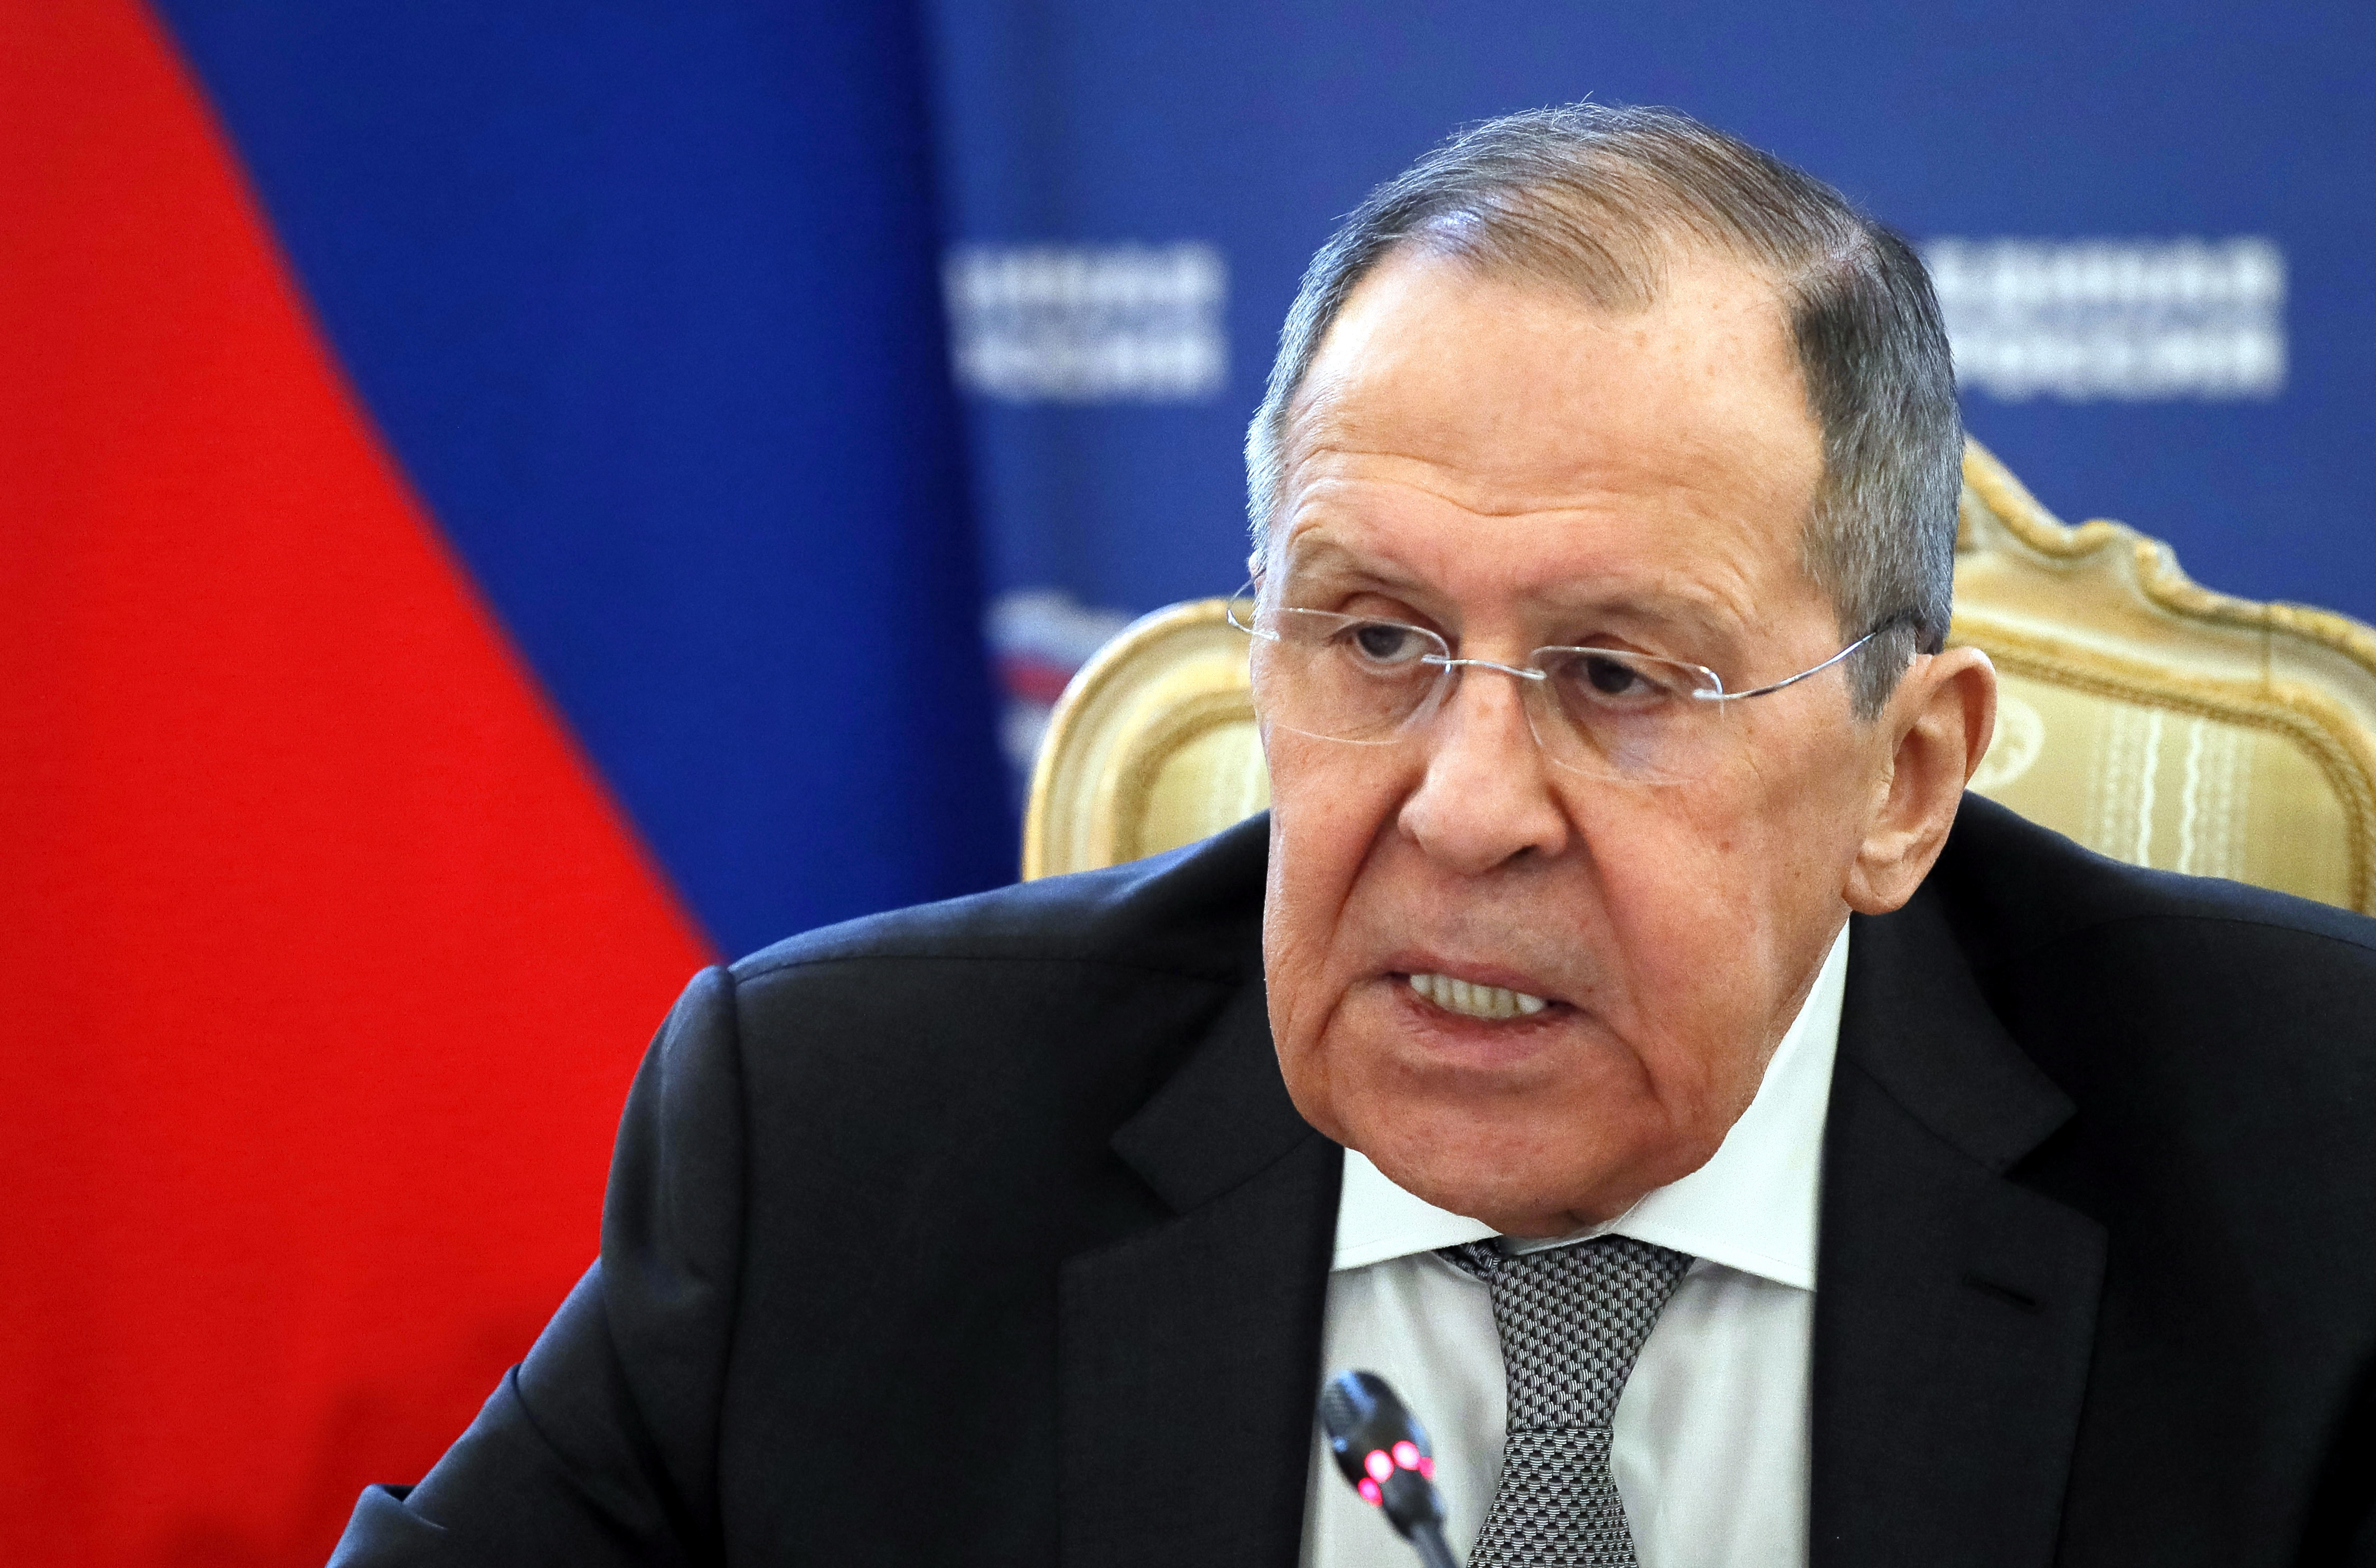 Rusia “patalea” porque a Lavrov aún no le han dado visado de EEUU “para ir a la ONU”